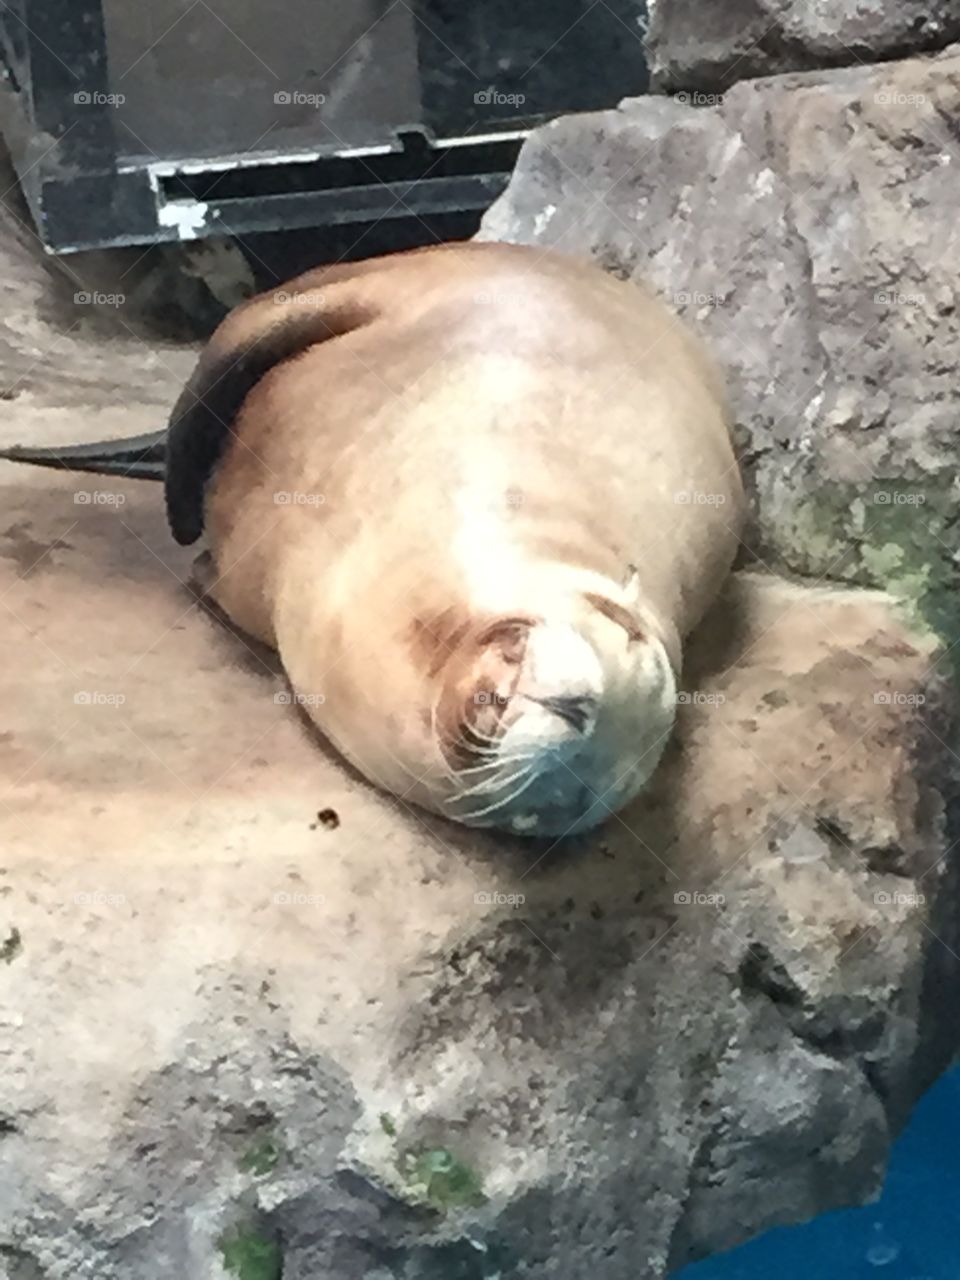 Seal at Como Park Zoo